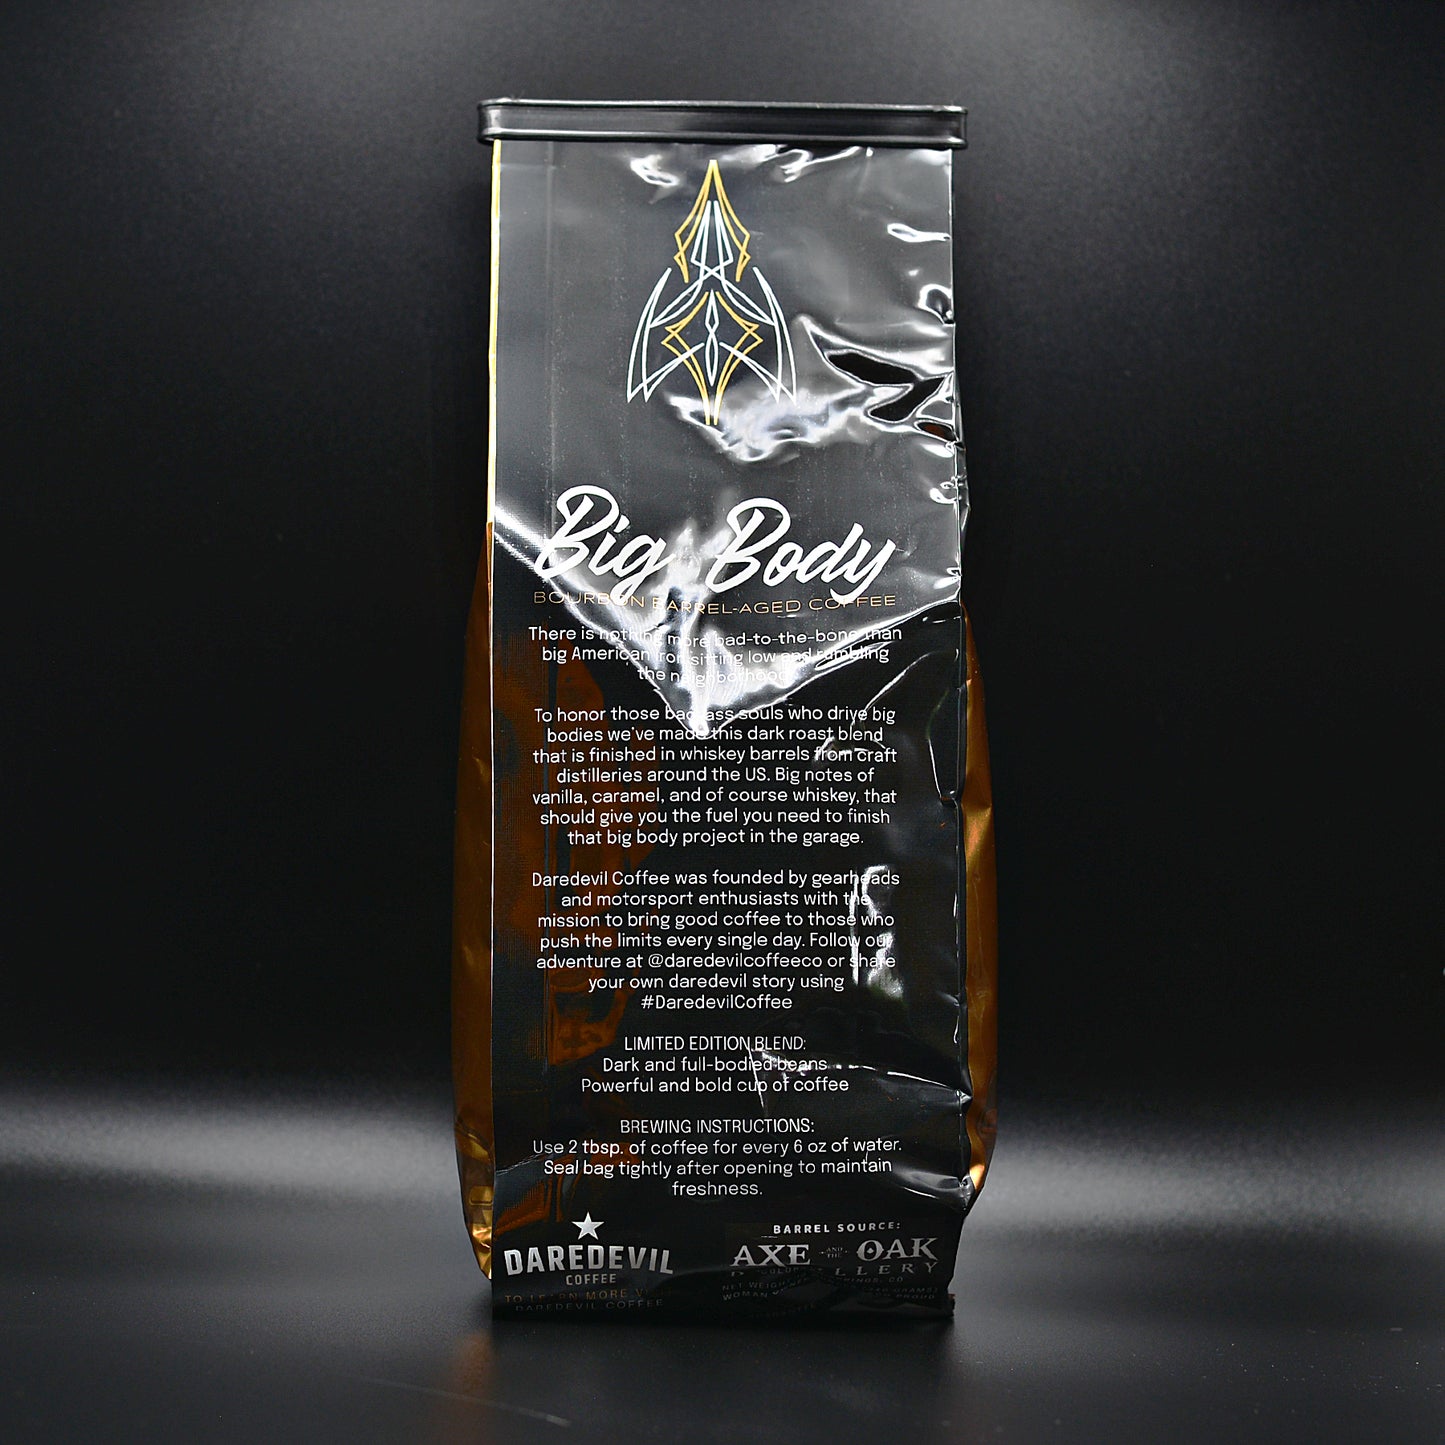 Daredevil Coffee - Big Body Bourbon Barrel-Aged Coffee Bag 12oz